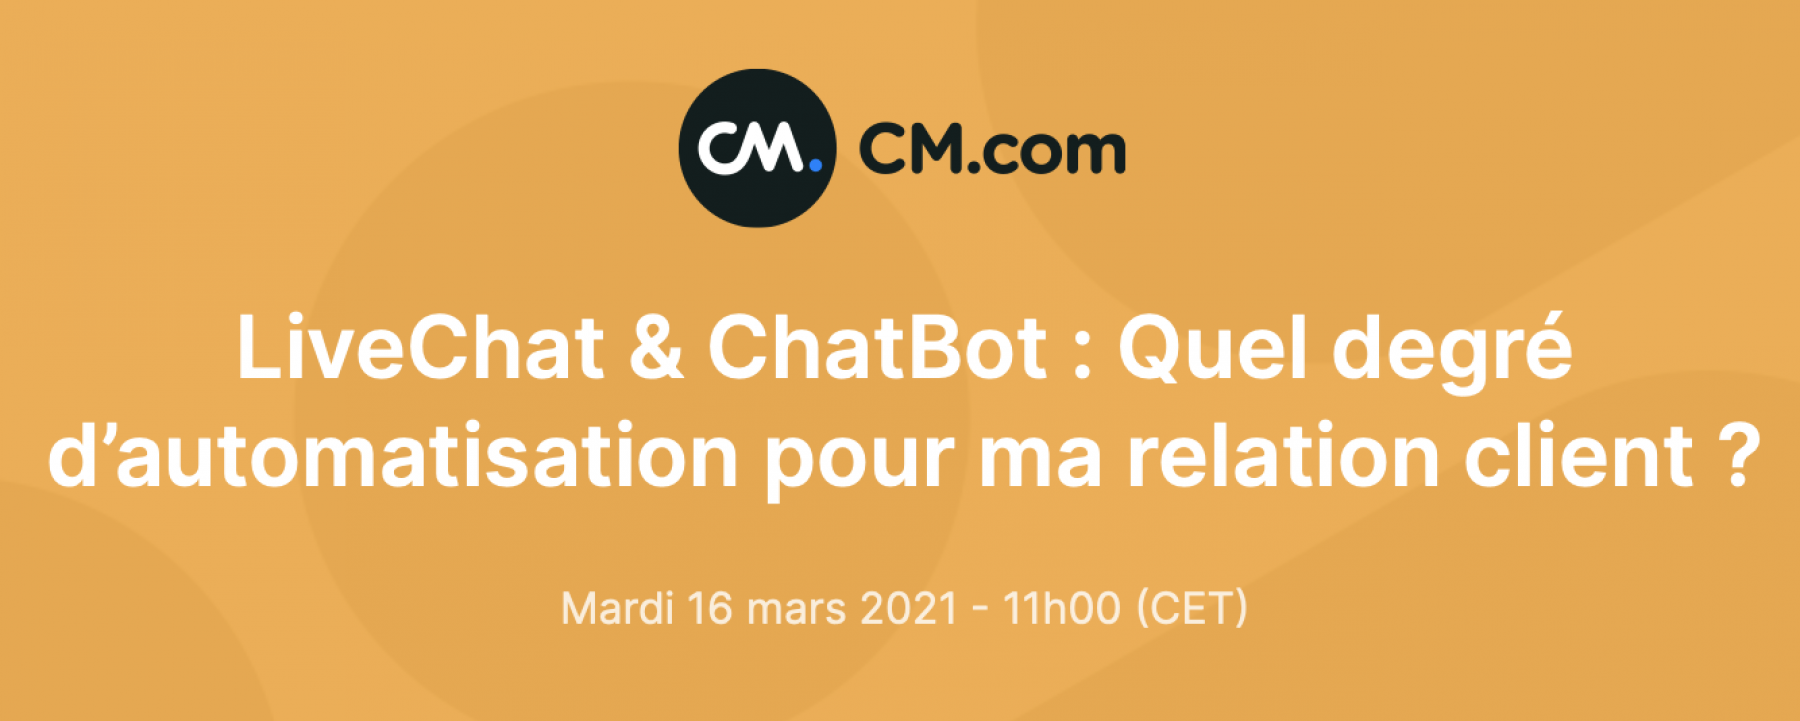 LiveChat & ChatBot : Quel degré d’automatisation pour ma relation client ? webinar organisé par CM.com le 16 mars